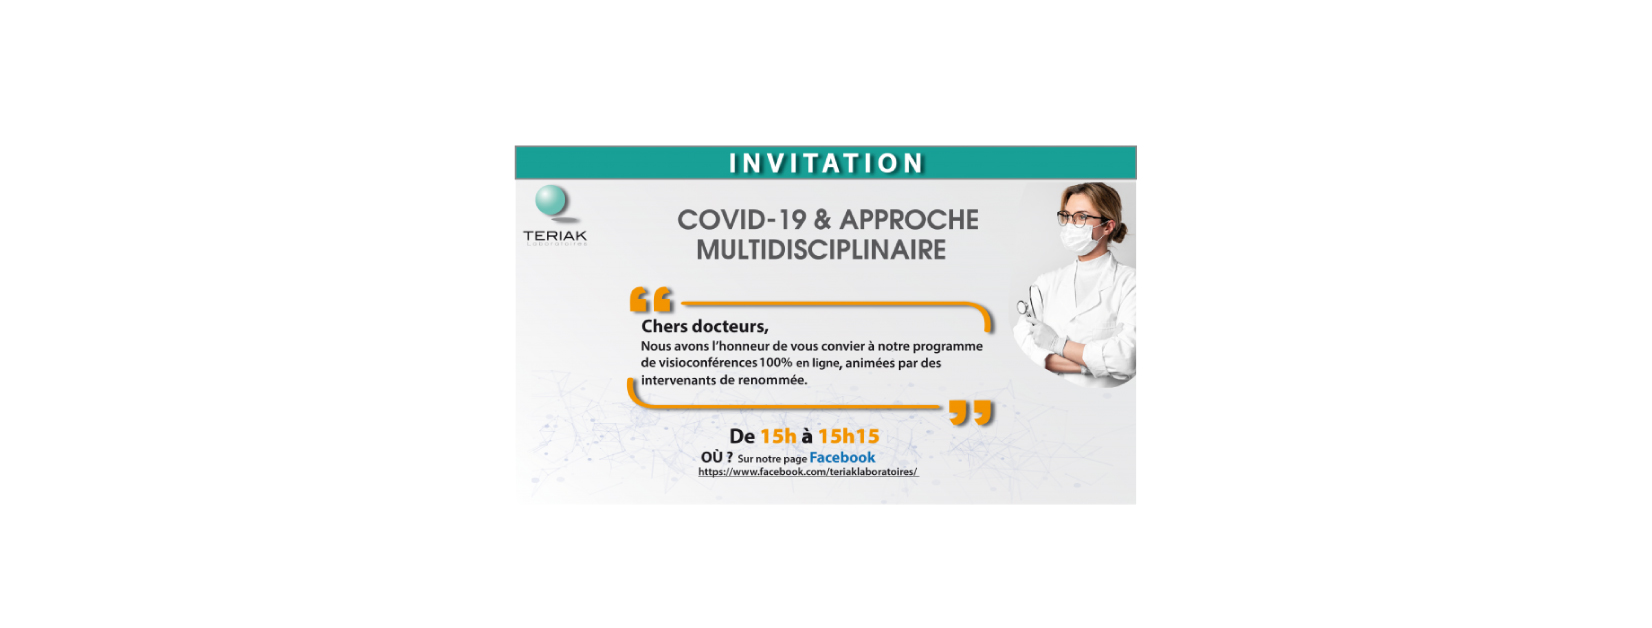 COVID-19 & approche multidisciplinaire